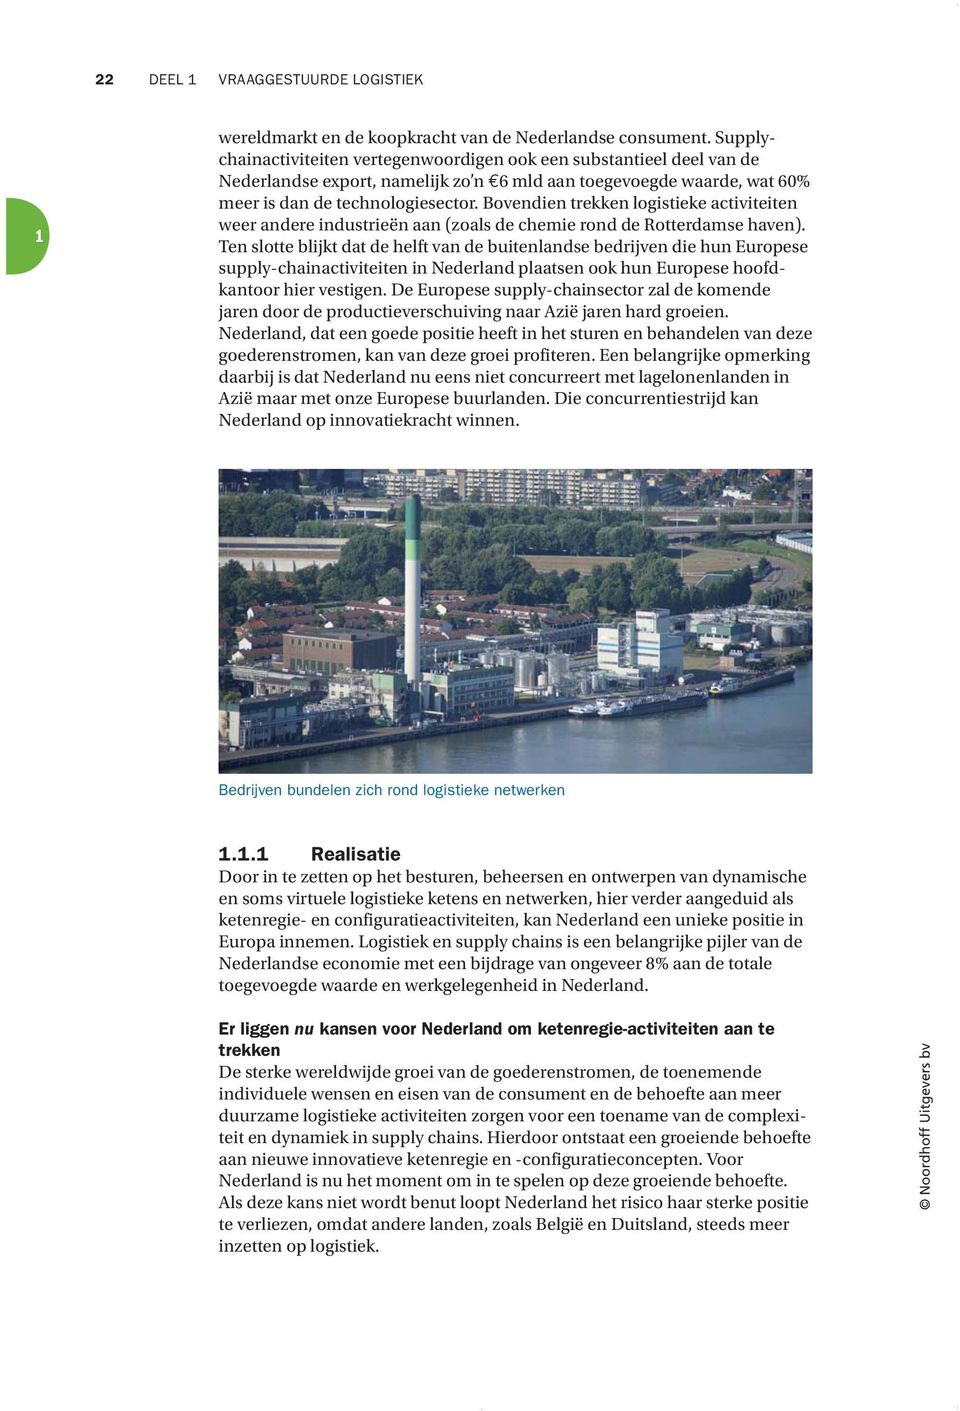 Bovendien trekken logistieke activiteiten weer andere industrieën aan (zoals de chemie rond de Rotterdamse haven).